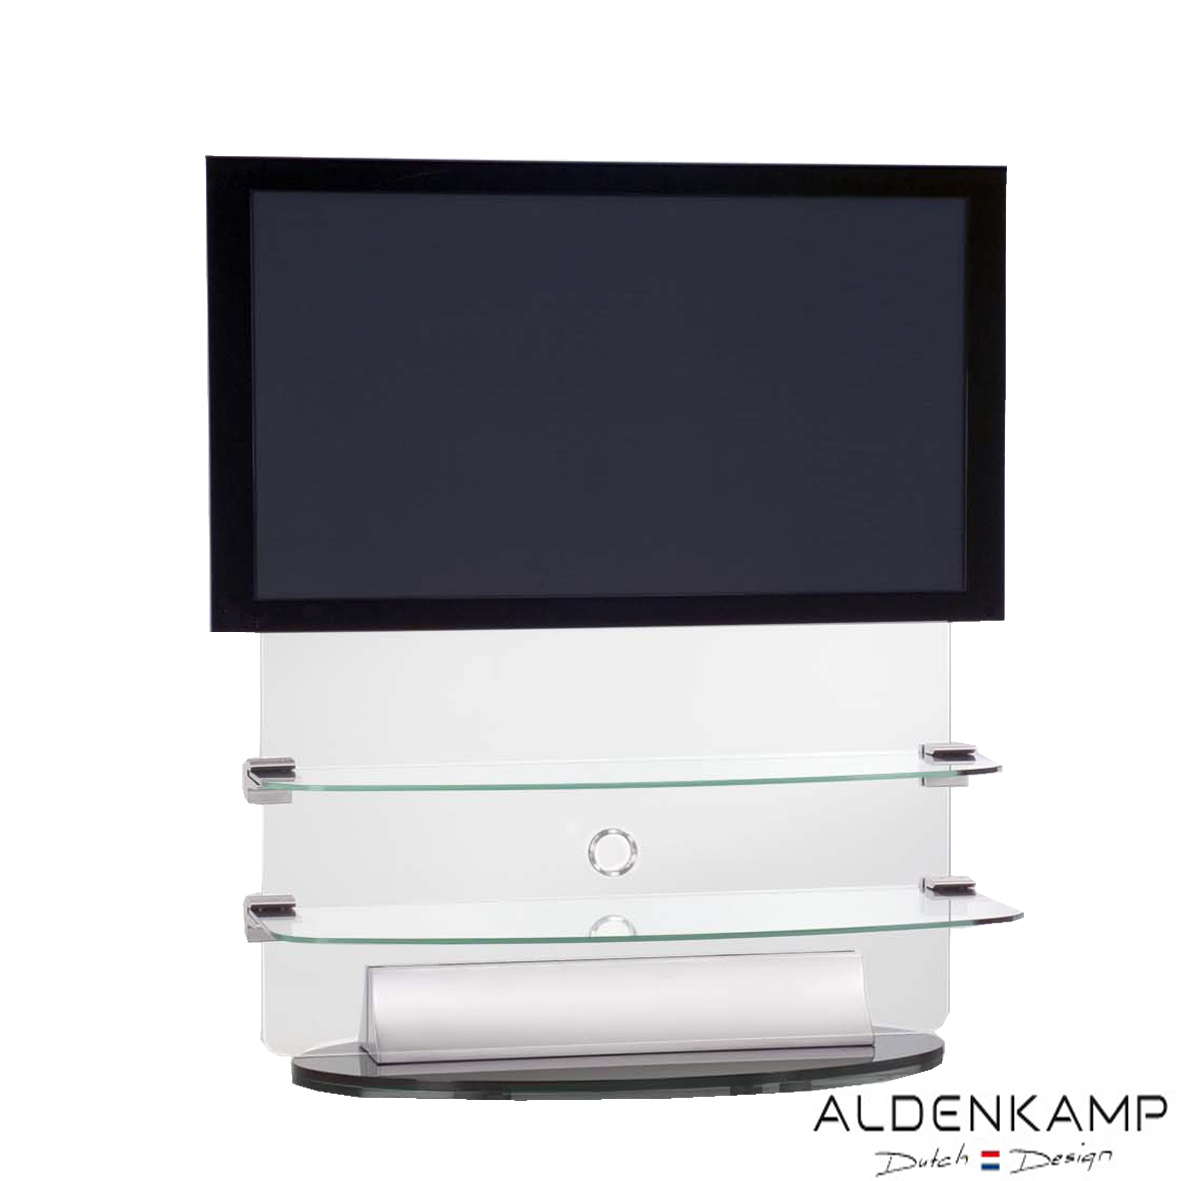 Today's Best Deal - Aldenkamp Plasma/LCD Meubel